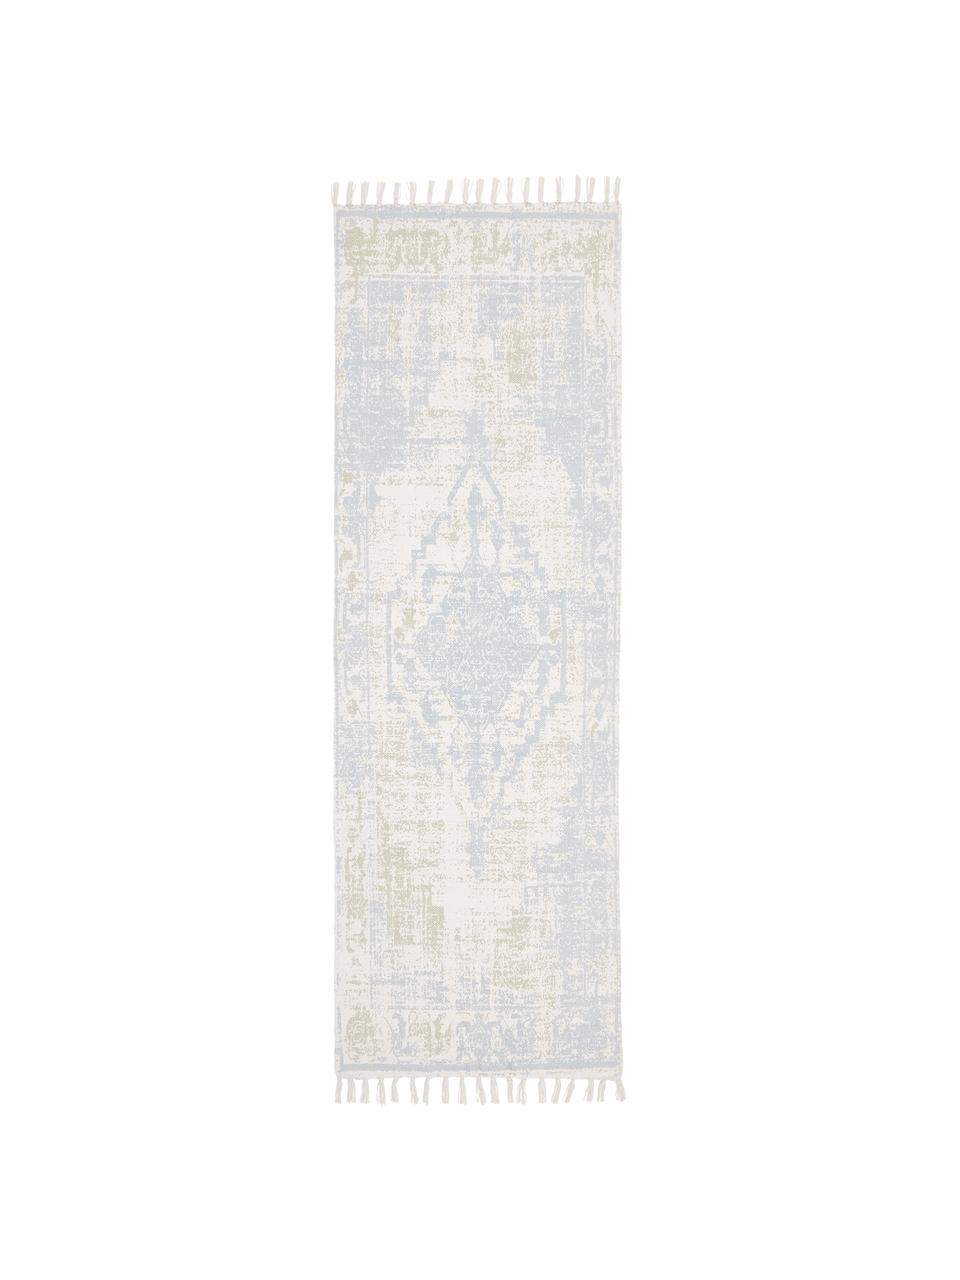 Tapis d'entrée beige bleu vintage tissé main Jasmine, Beige, bleu, larg. 80 x long. 250 cm